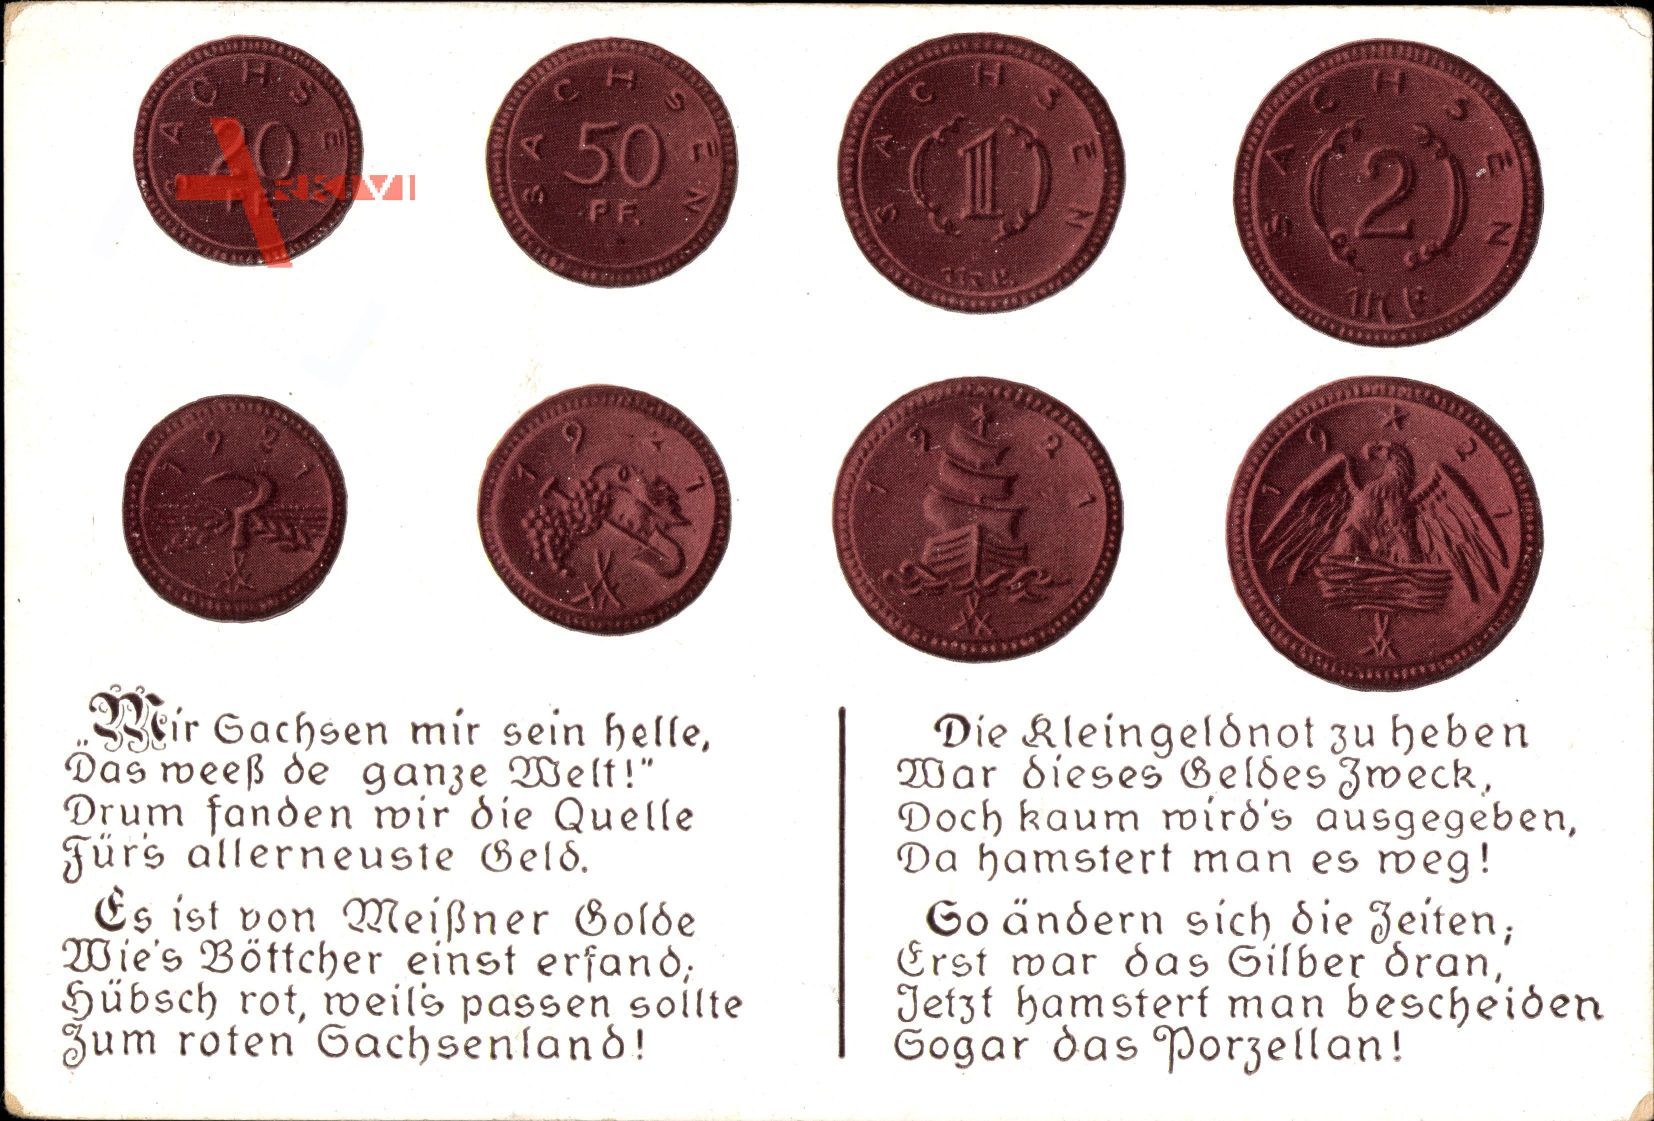 Münz Sachsen, Kleingeld, 50 Pfennig, 20 Pfennig, 1921